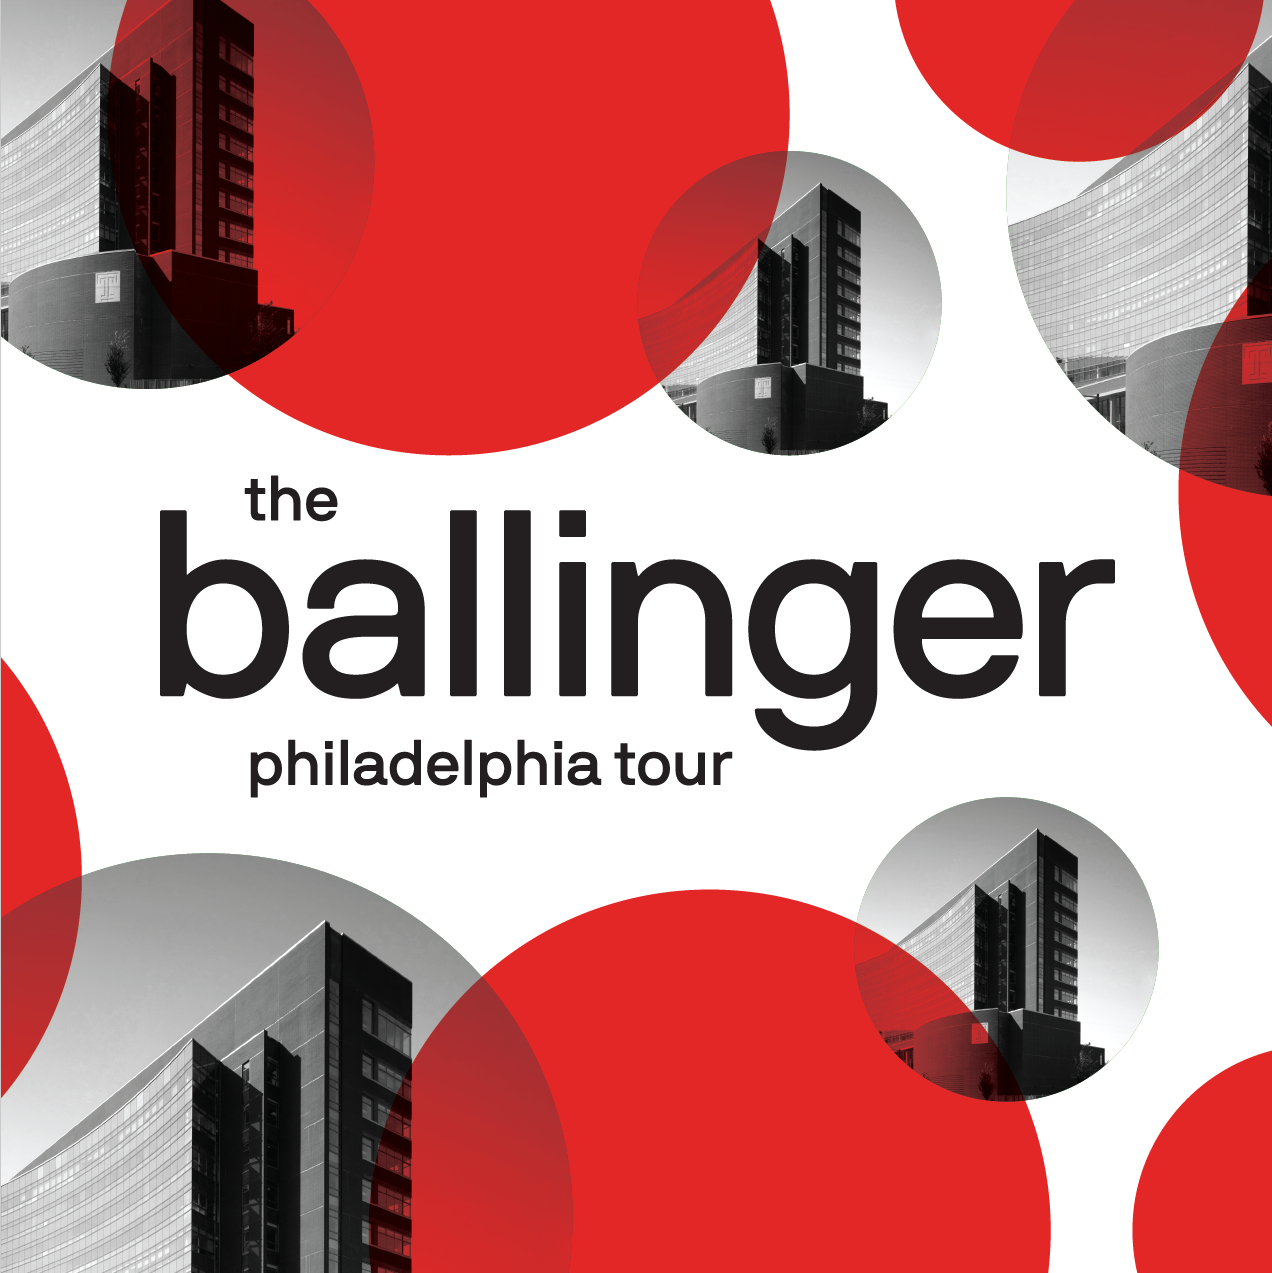 Cover photo stating 'the ballinger philadelphia tour'